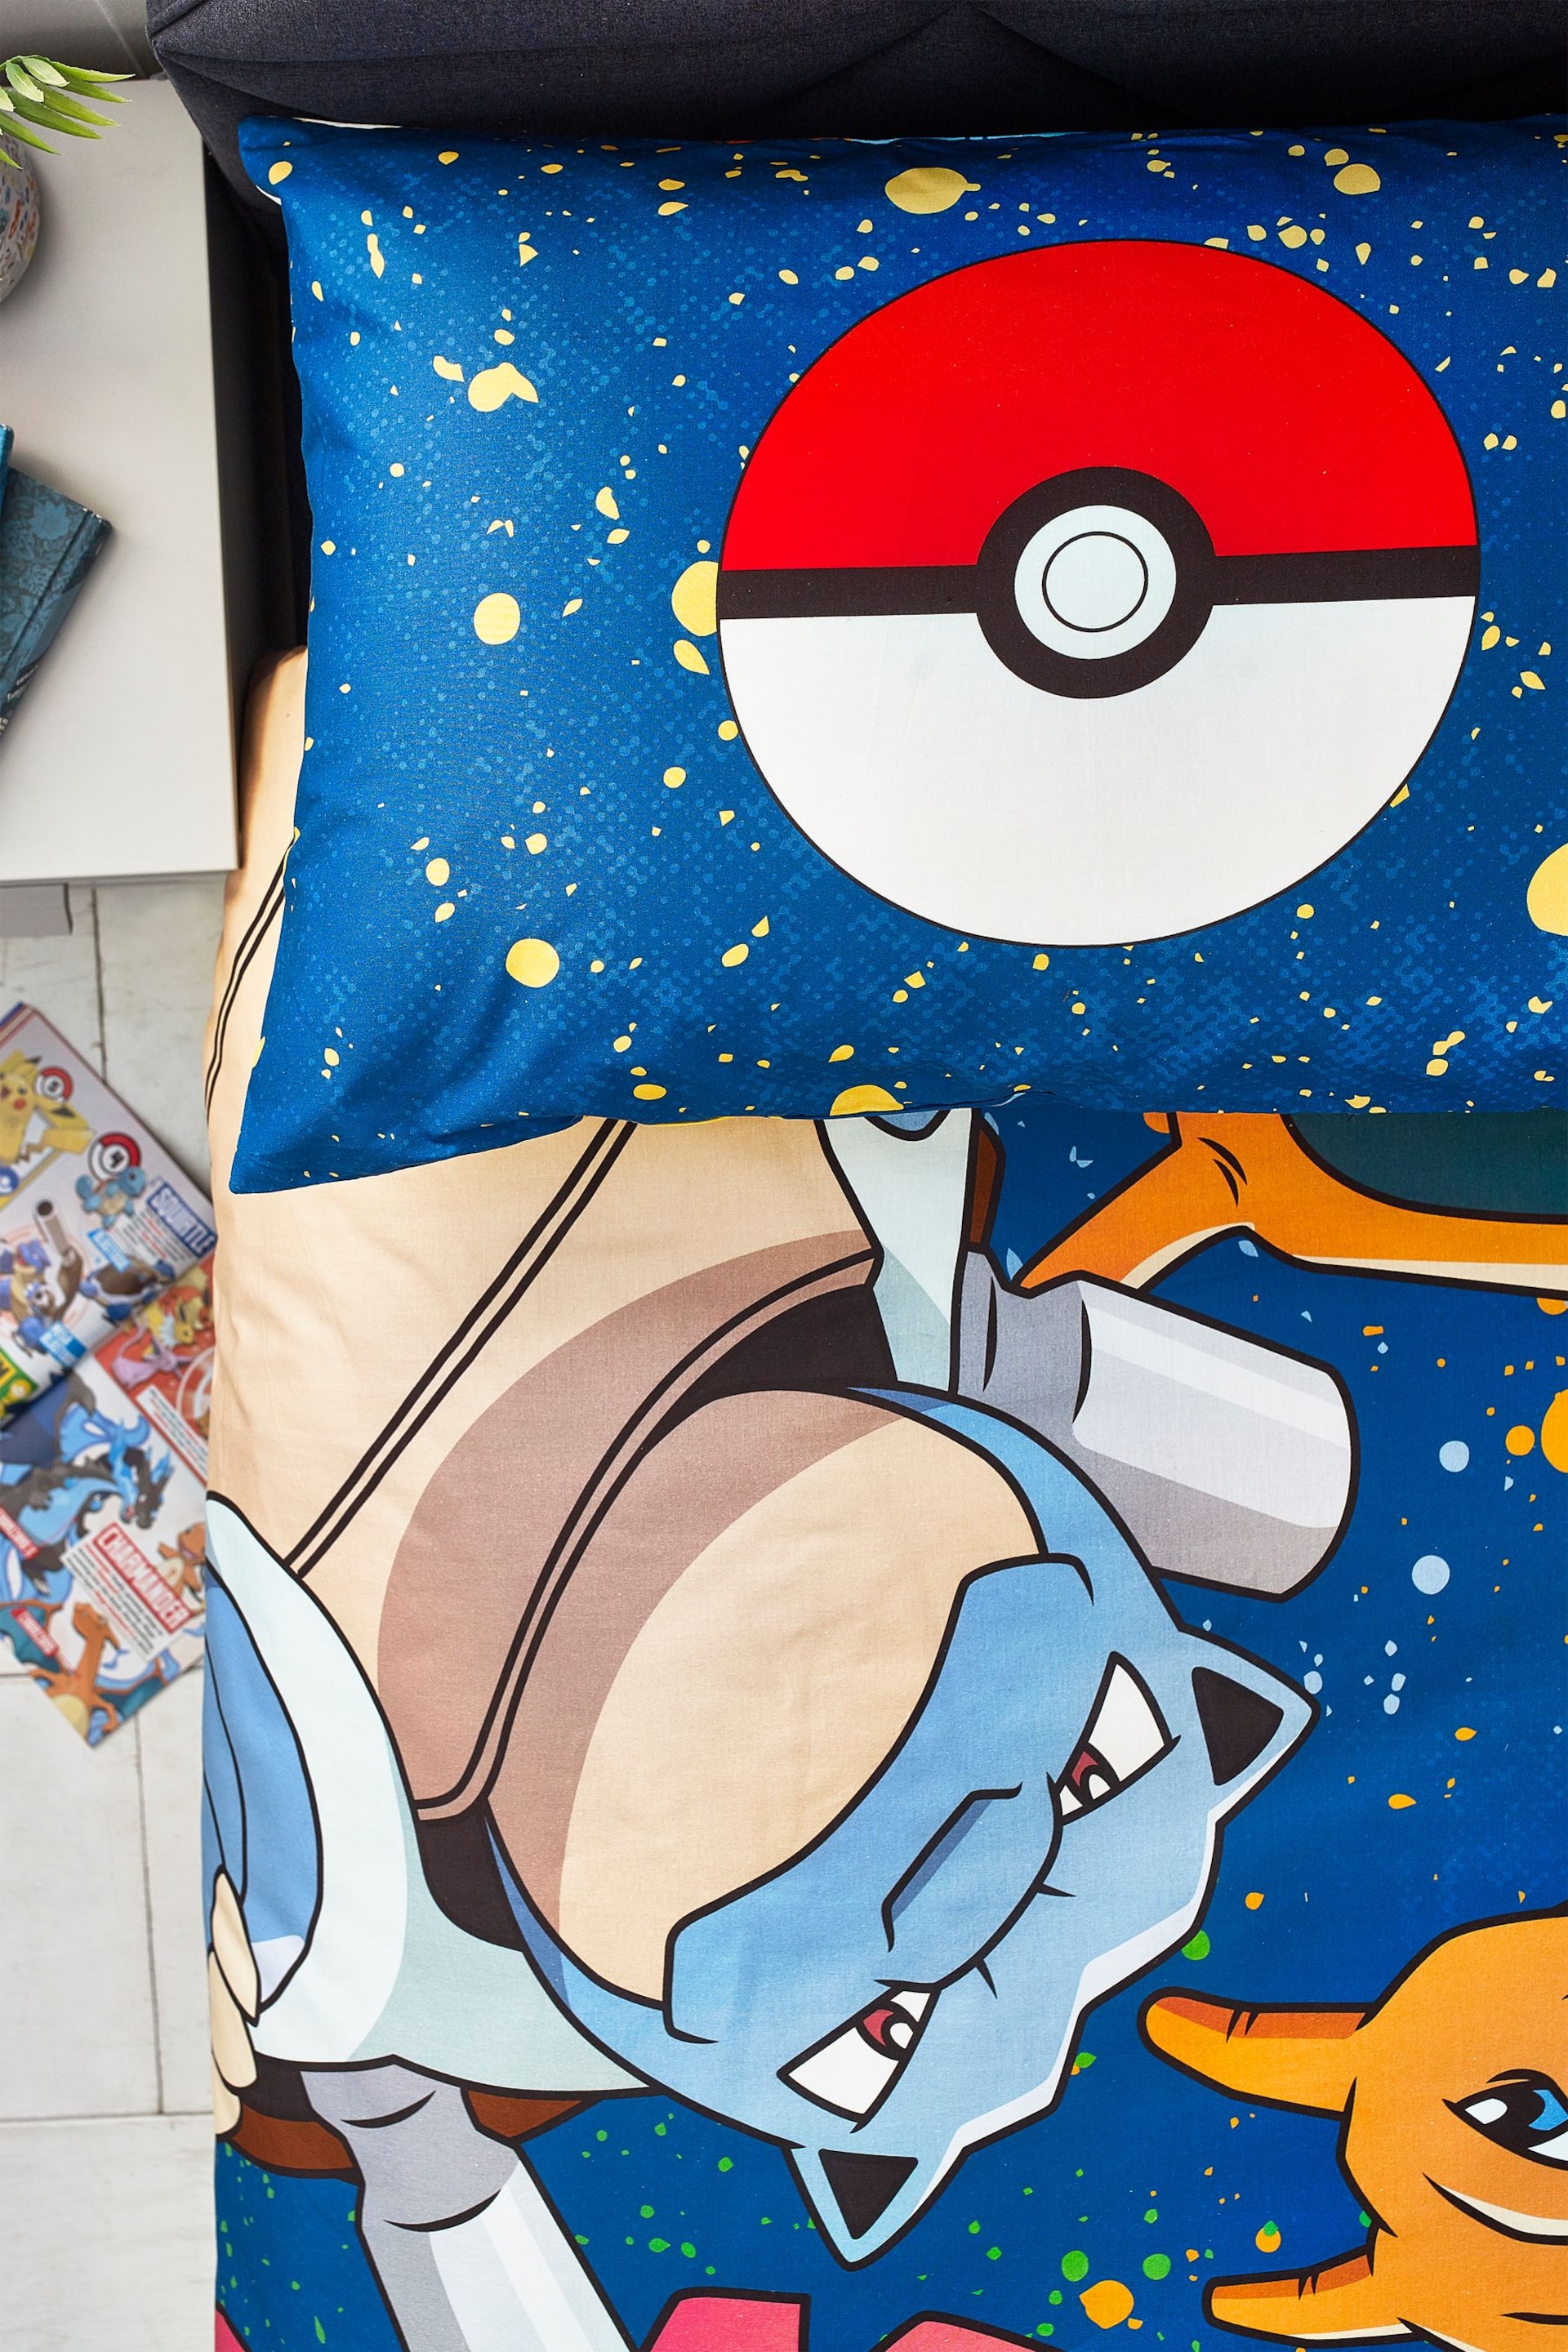 Pokémon Blue Reversible 100% Cotton Duvet Cover And Pillowcase Set - Image 6 of 11